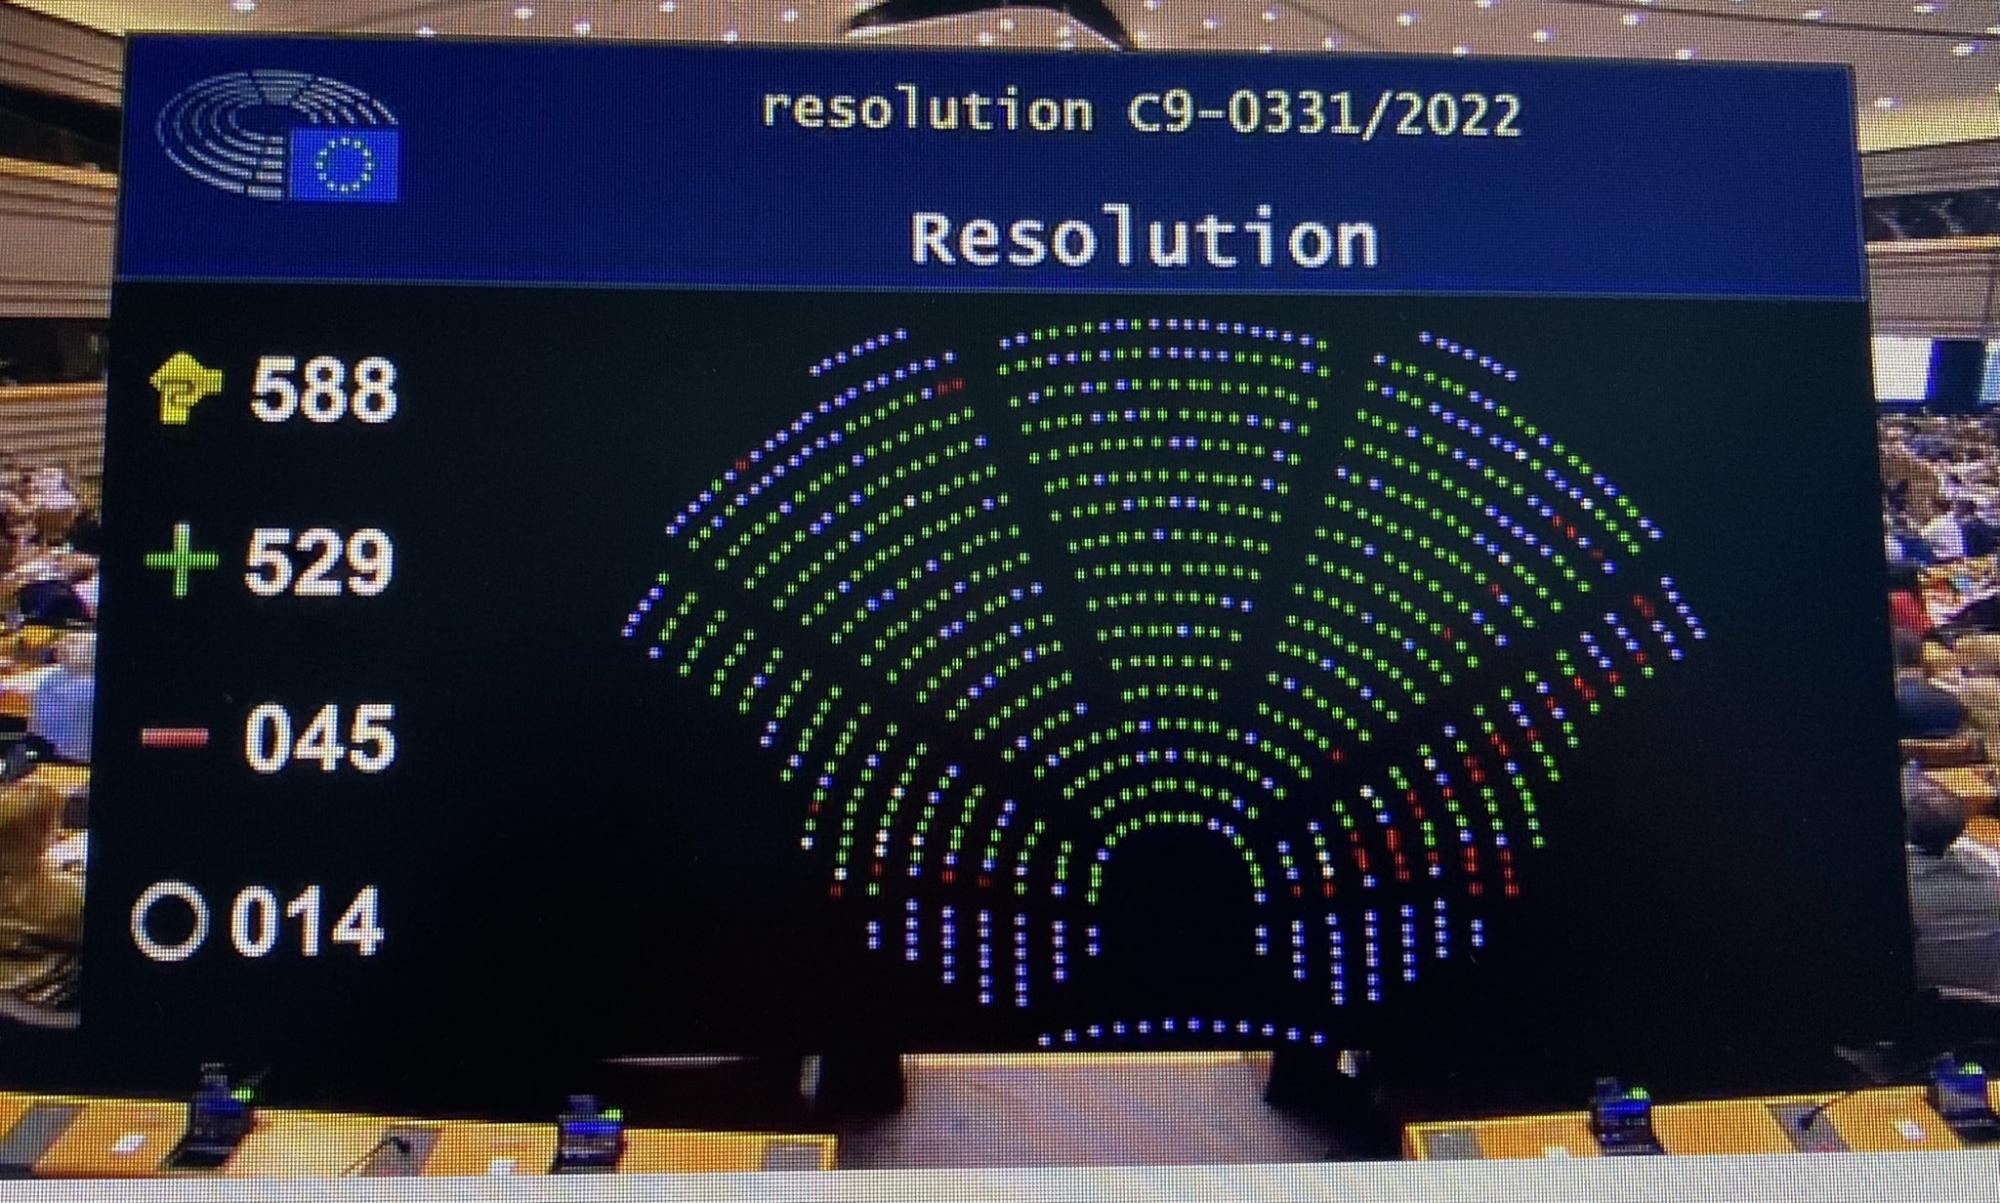 Европарламент принял резолюцию о статусе кандидата ЕС для Украины